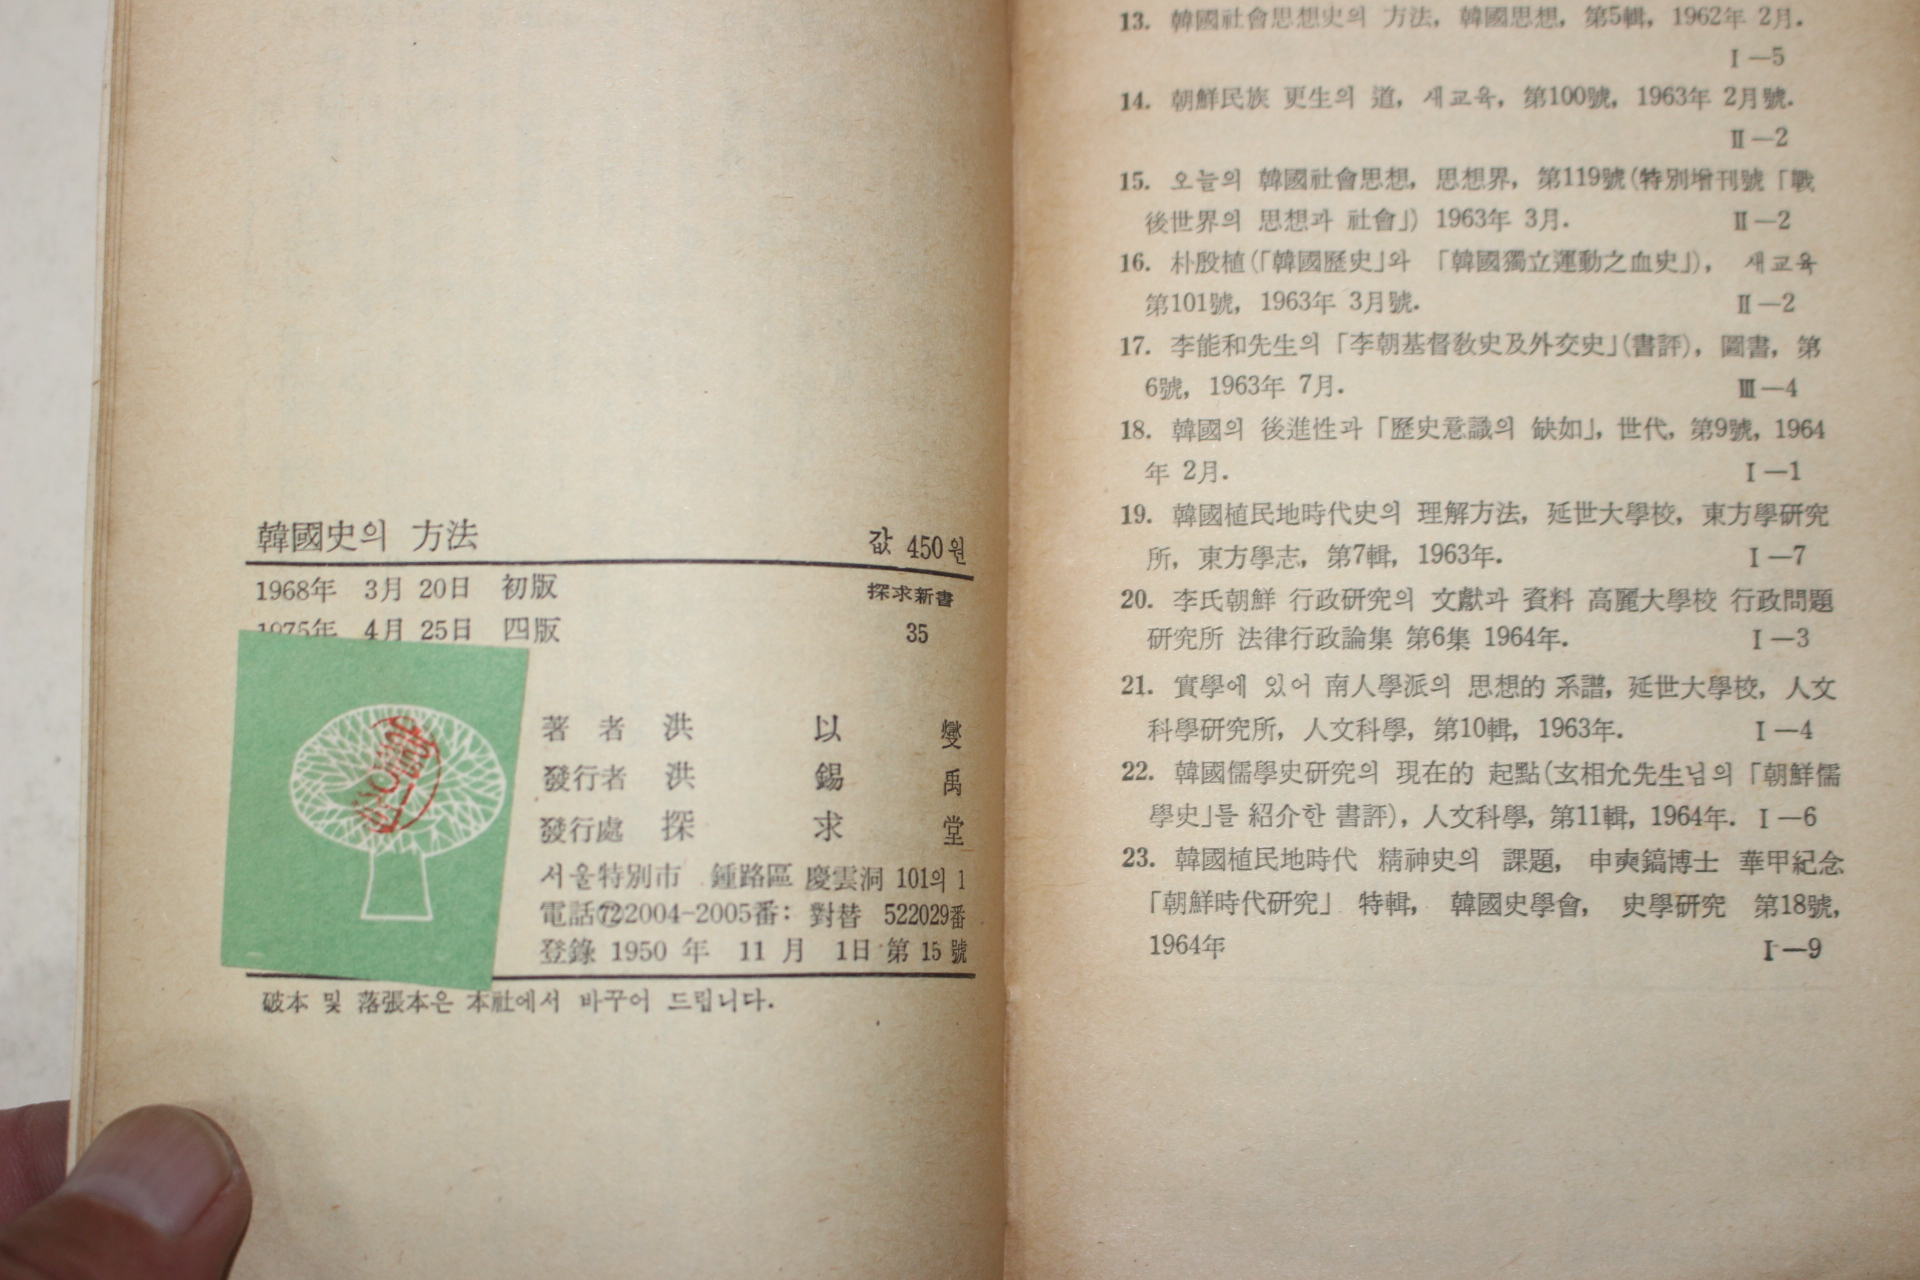 1975년4판 홍이섭(洪以燮) 한국사의 방법(韓國史의 方法)